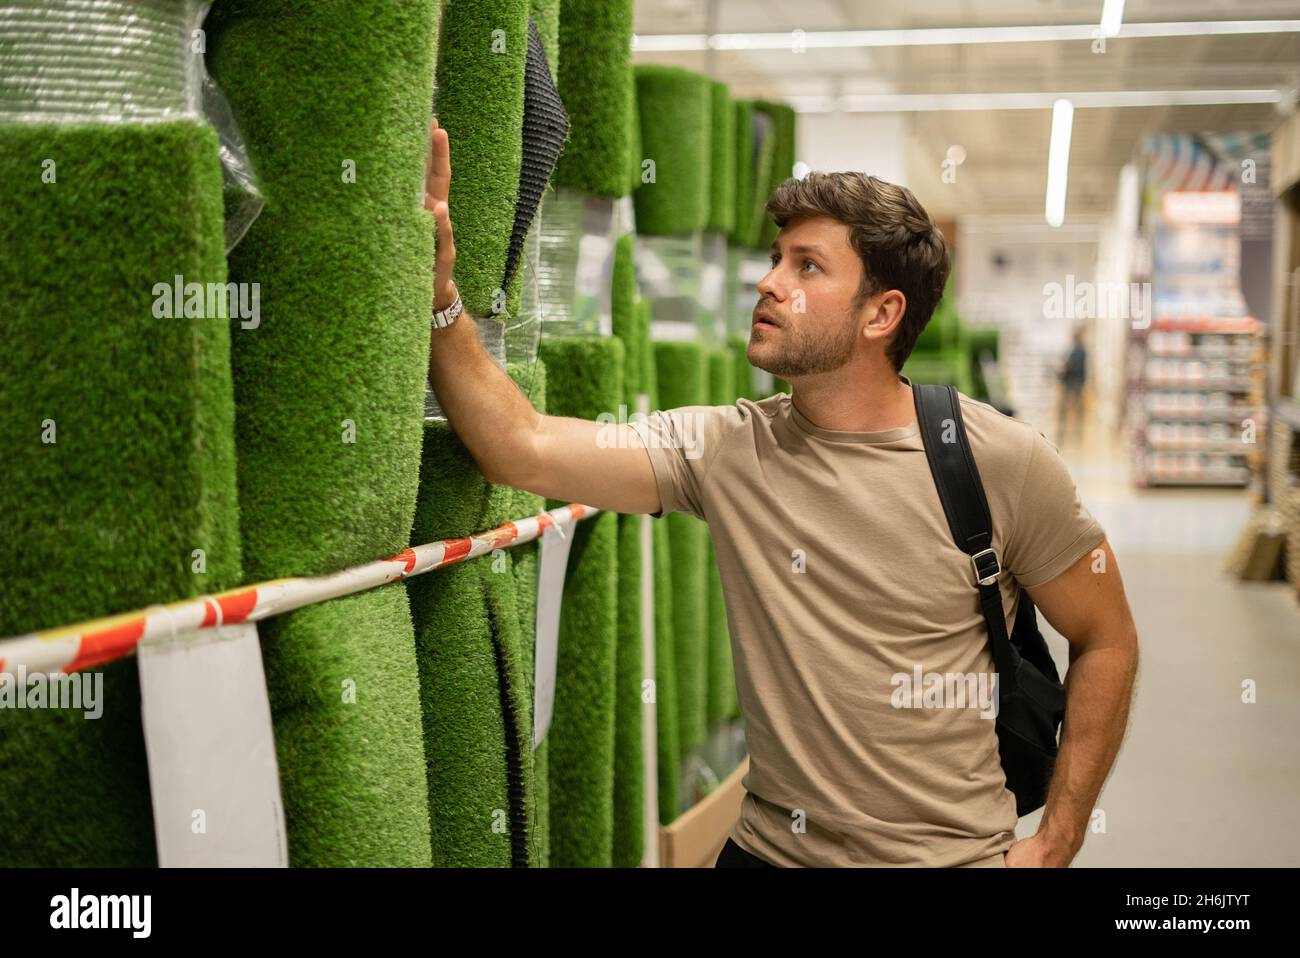 Homme décontracté vérifiant la qualité de l'herbe artificielle en rouleau tout en touchant le matériau et en regardant vers le haut au centre Banque D'Images